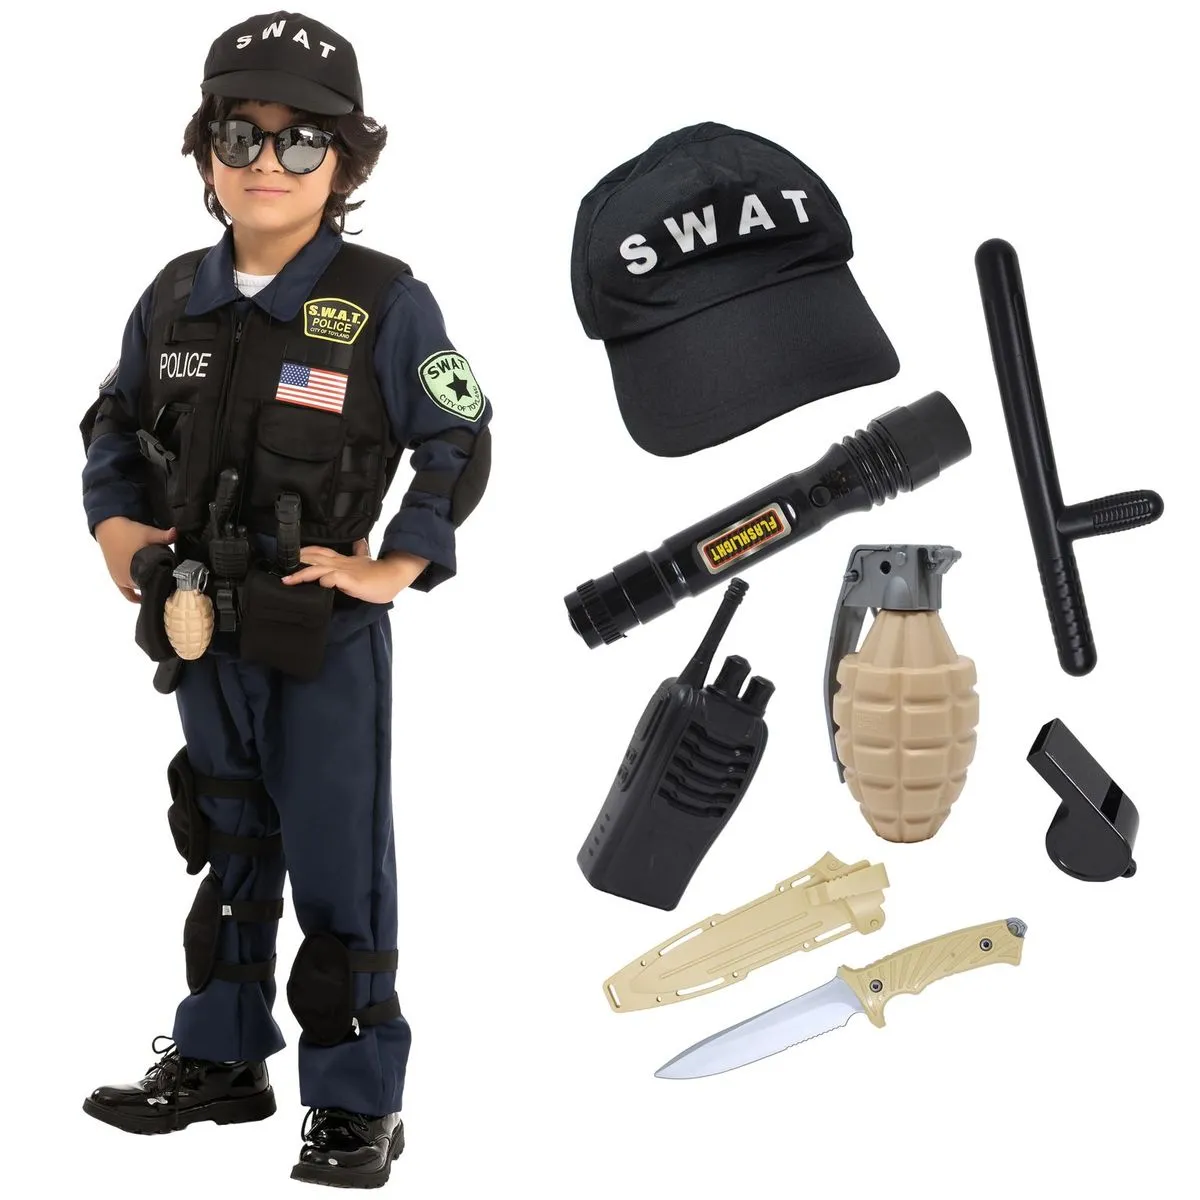 Déguisement Policier Swat Enfant : de 6 ans à 12 ans